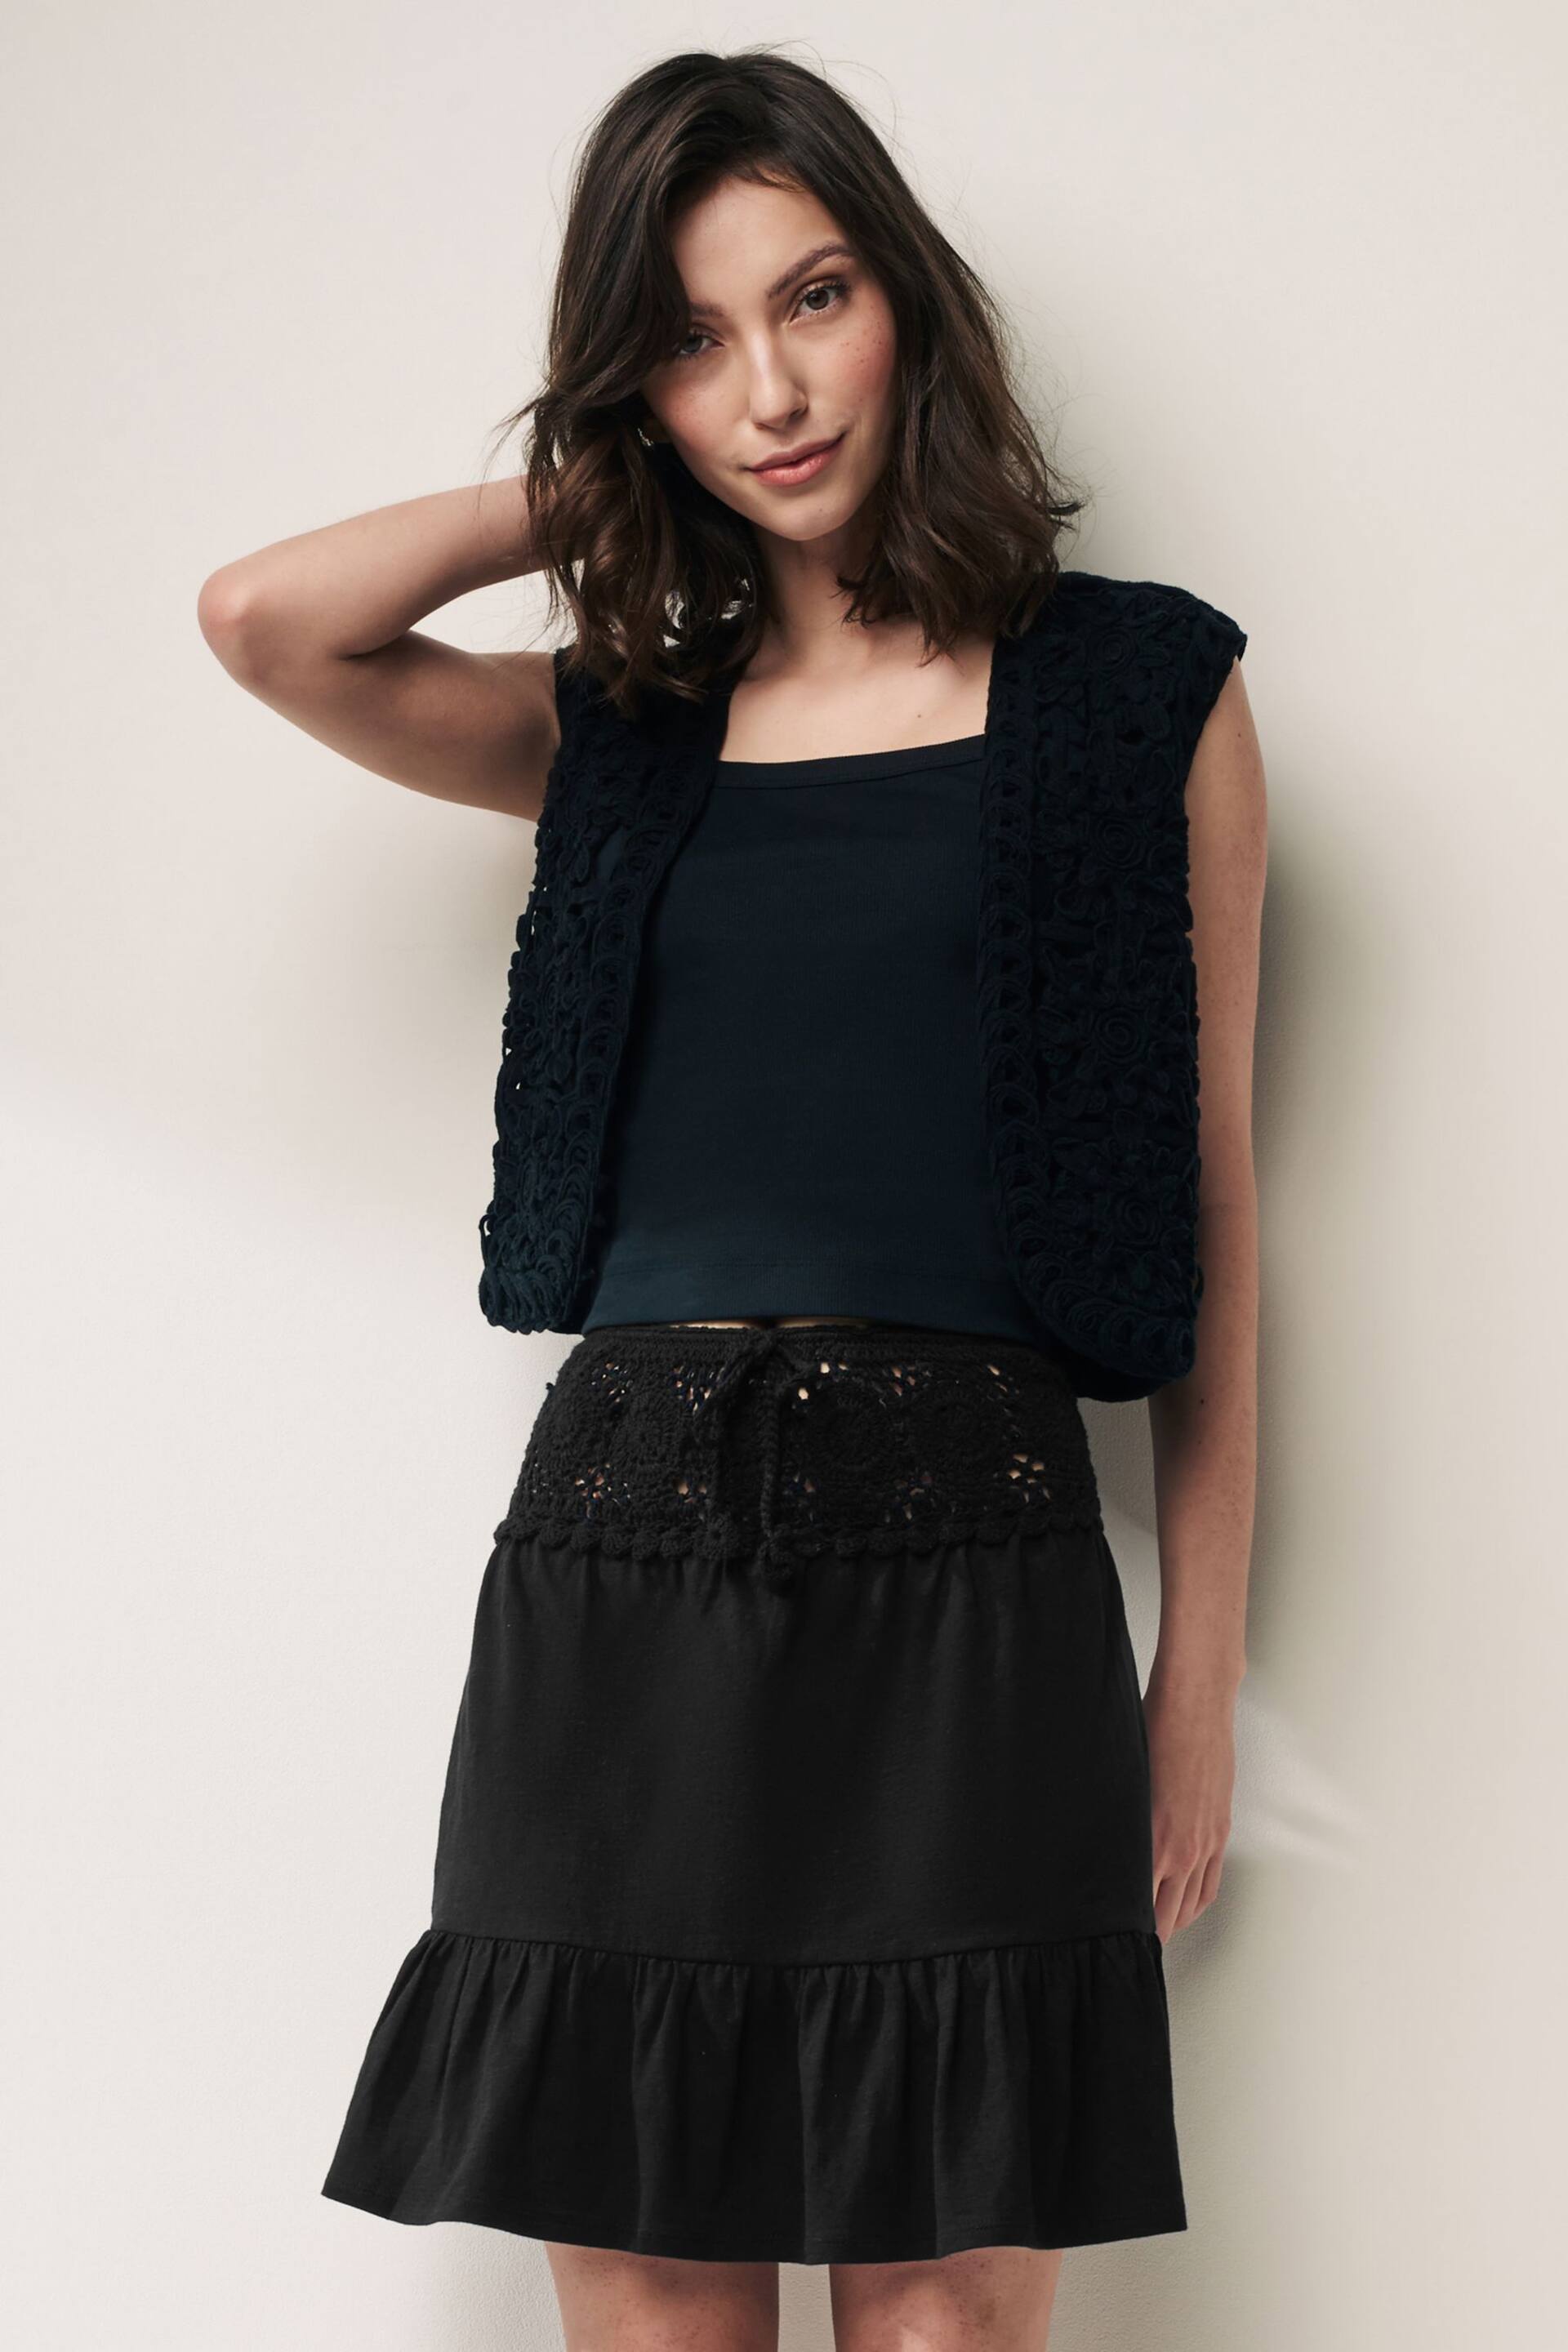 Black Crochet Mini Skirt - Image 1 of 6